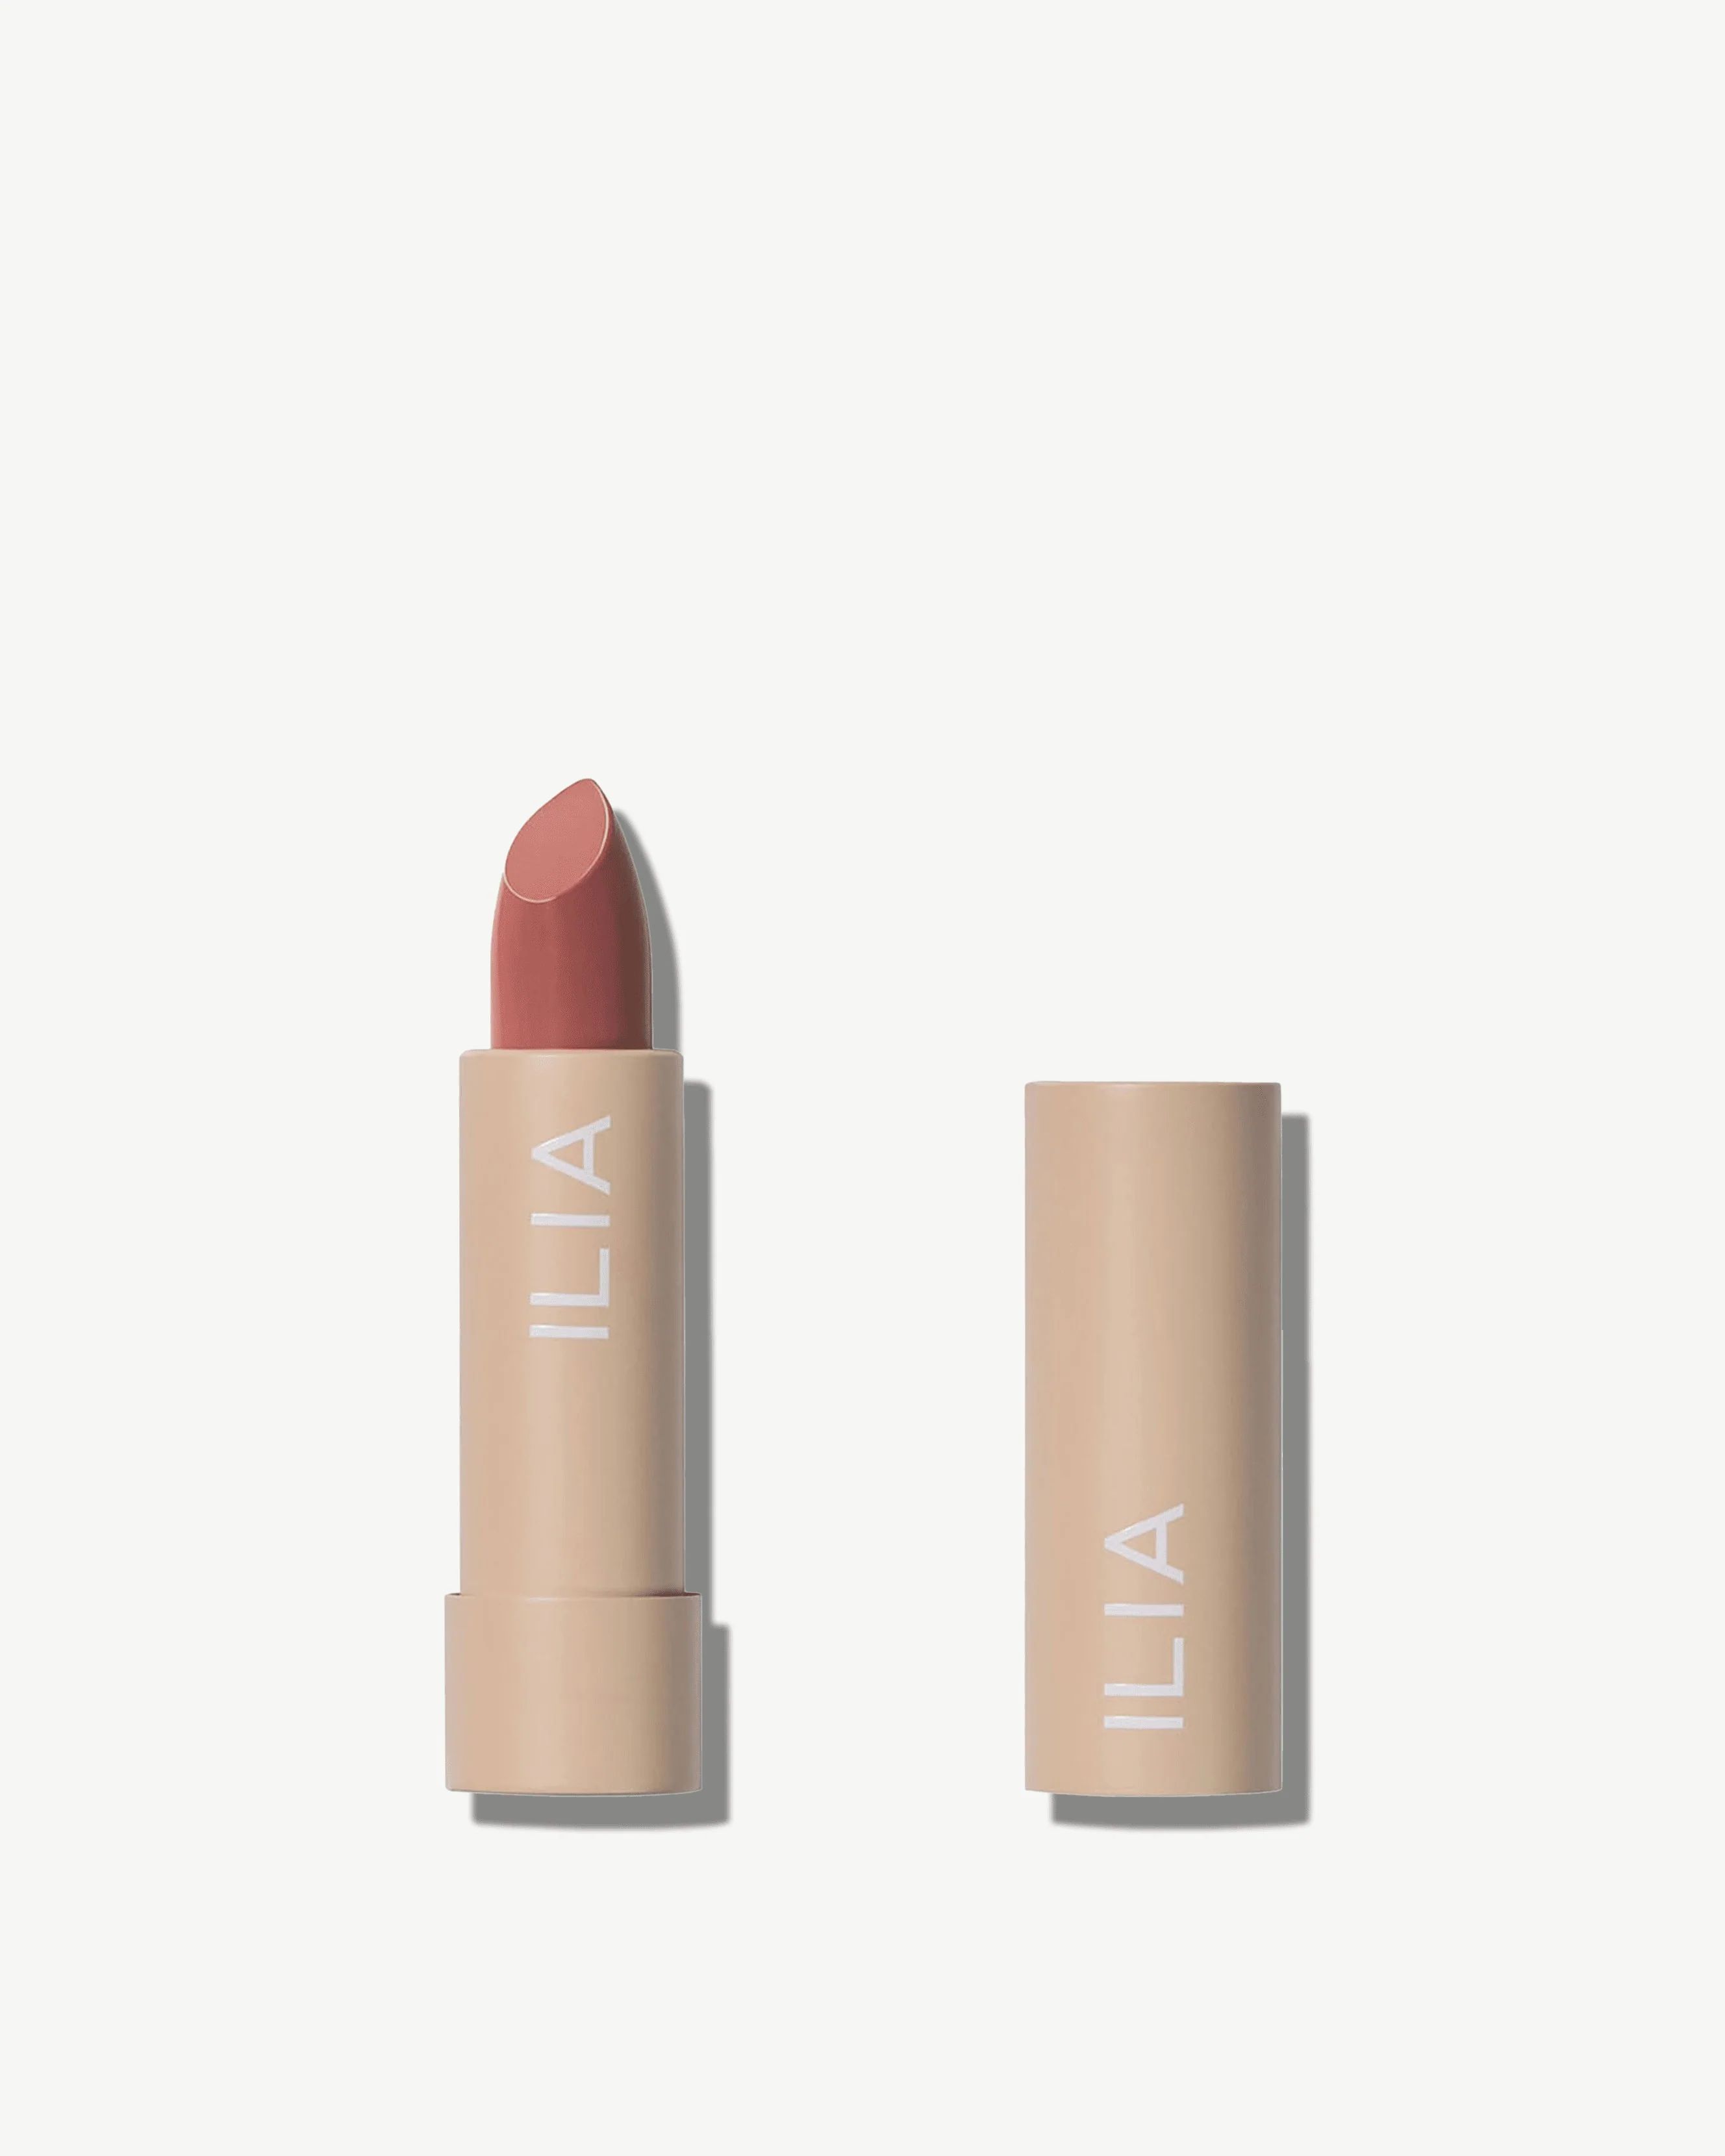 Ilia Color Block Lipstick - Clean, Natural Lipstick by Ilia | Credo Beauty